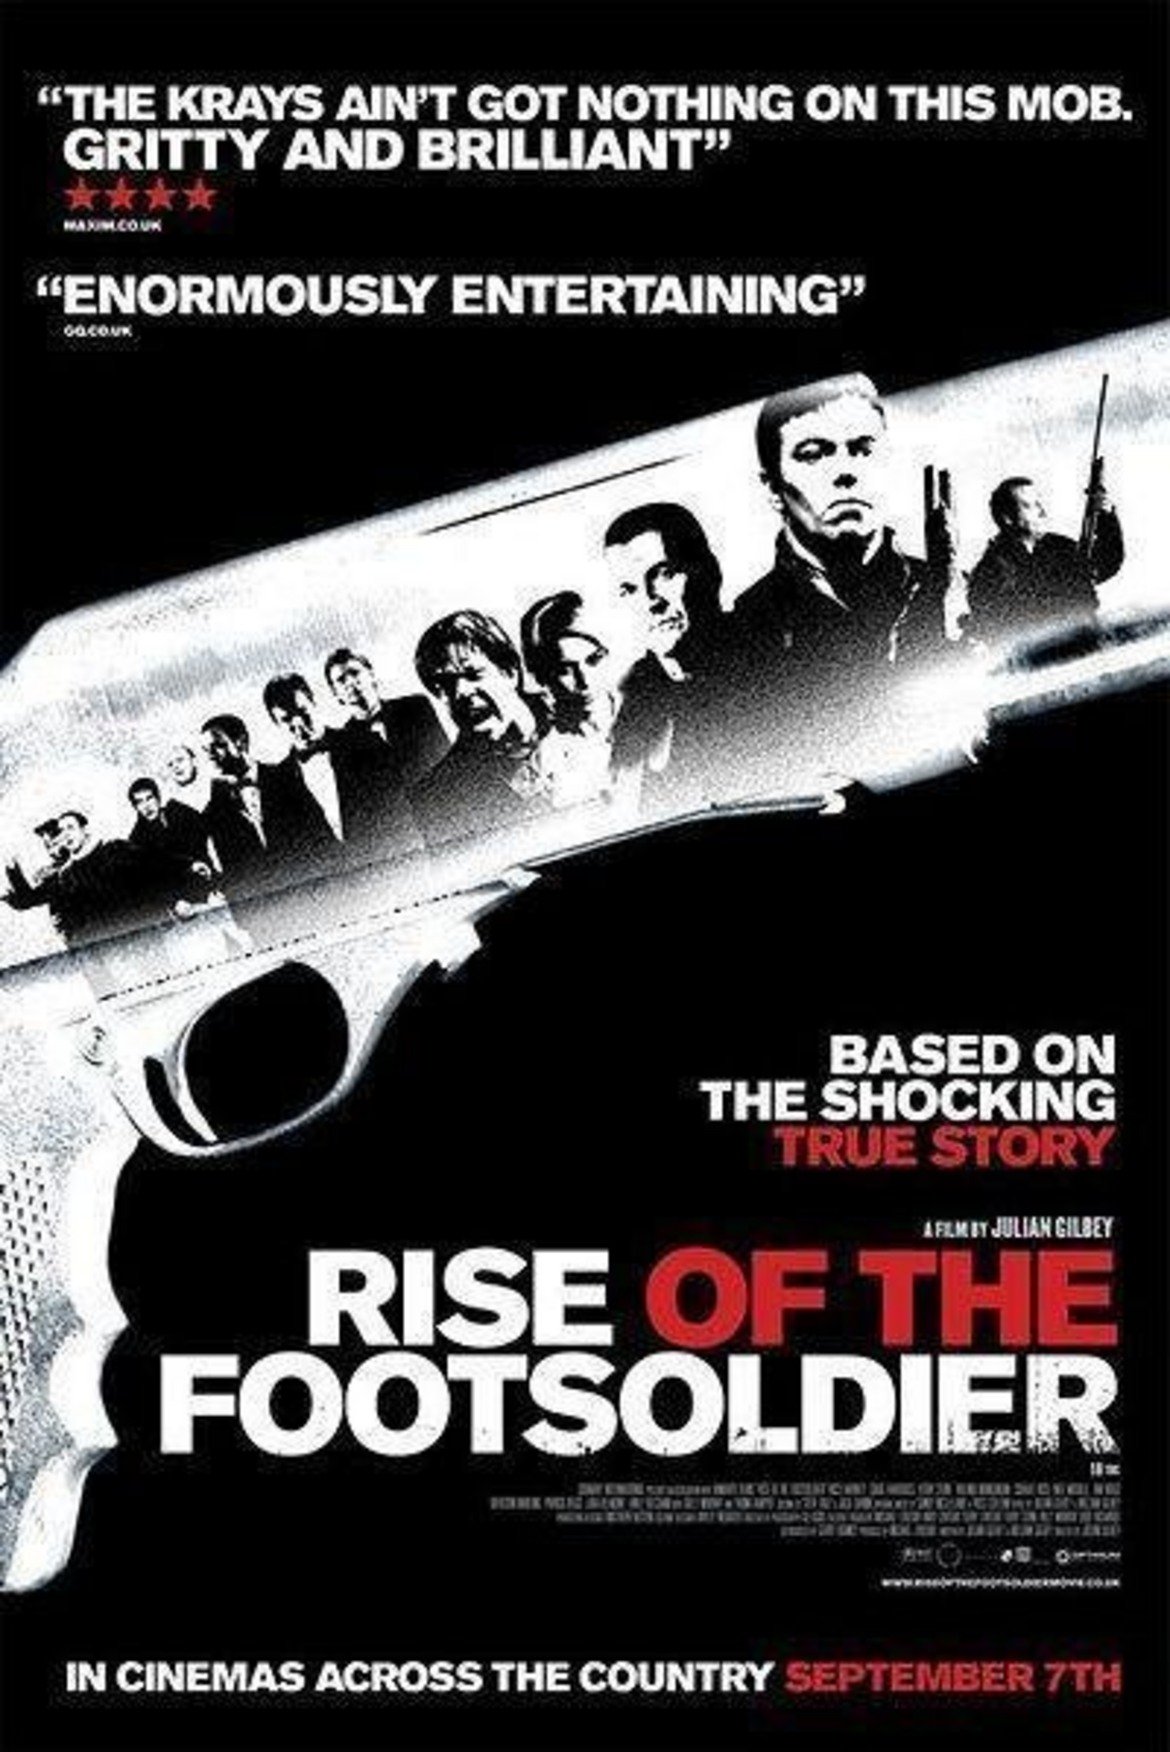 "Rise Of The Footsoldier" (2007)
Изключителен филм по действителен случай, който проследява "еволюцията" на Карлтън Лийч от един от тарторите на Уест Хем до една от основните фигури на подземния Лондон. Историята приключва с известното във Великобритания "Тройно убийство в "Рейндж Роувър" - една от най-бруталните гангстерски сцени в Англия в края на миналия век.